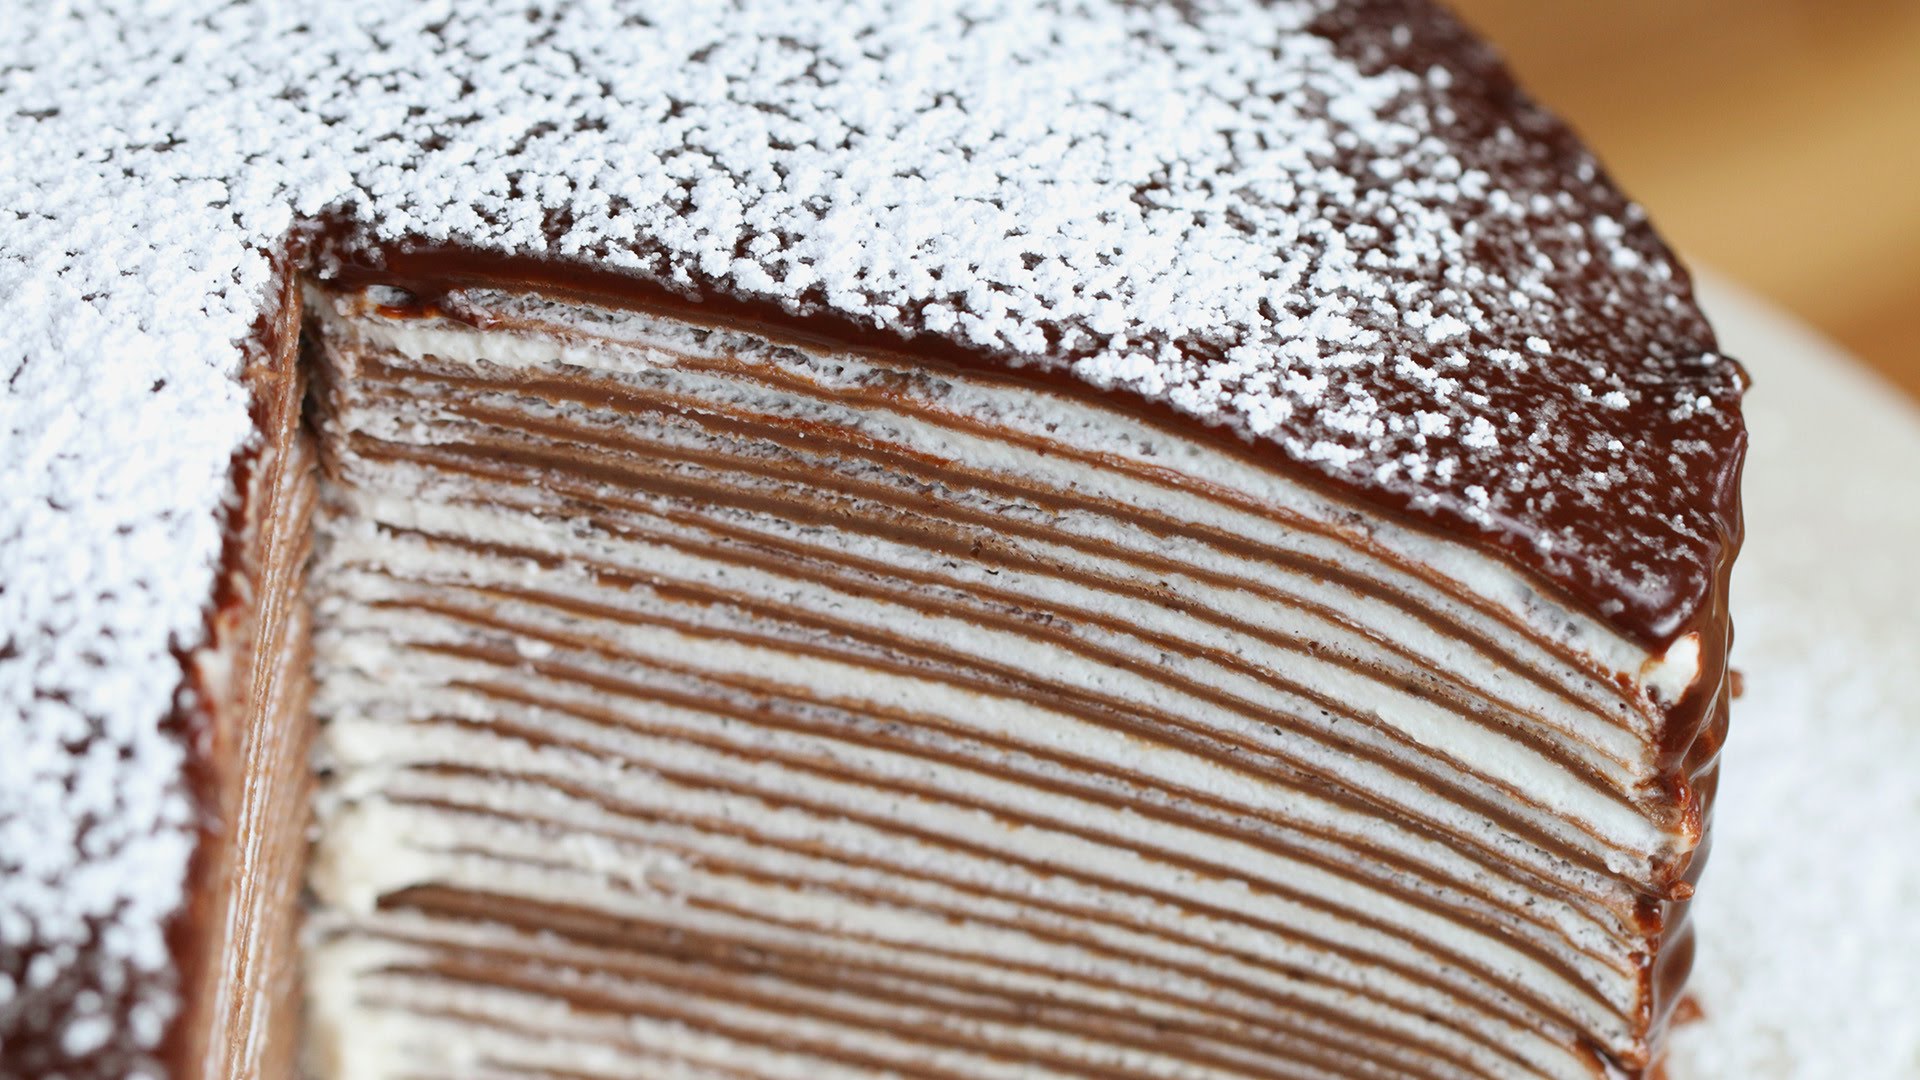 Tort de ciocolata la tigaie, cel mai simplu desert